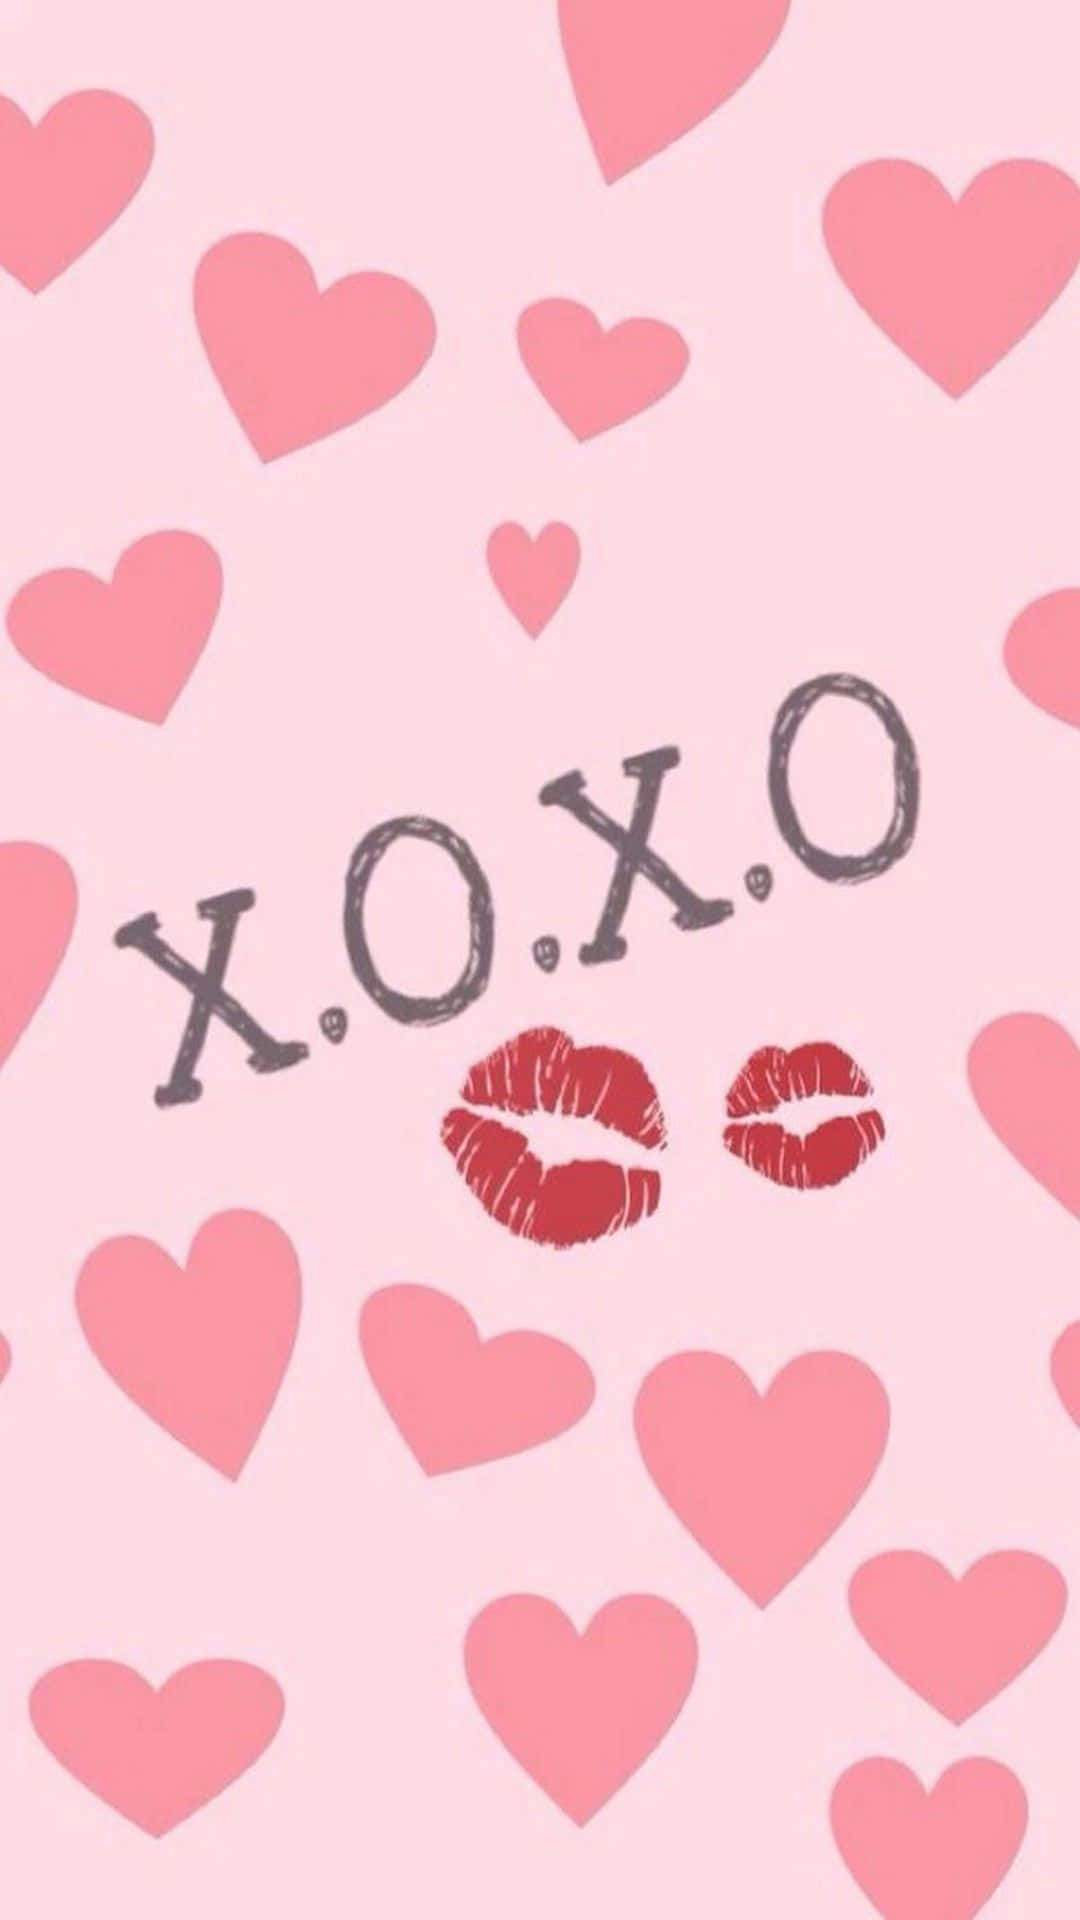 Wallpaper: Xoxo kys wallpapers til Valentinsdag til telefon X. Wallpaper